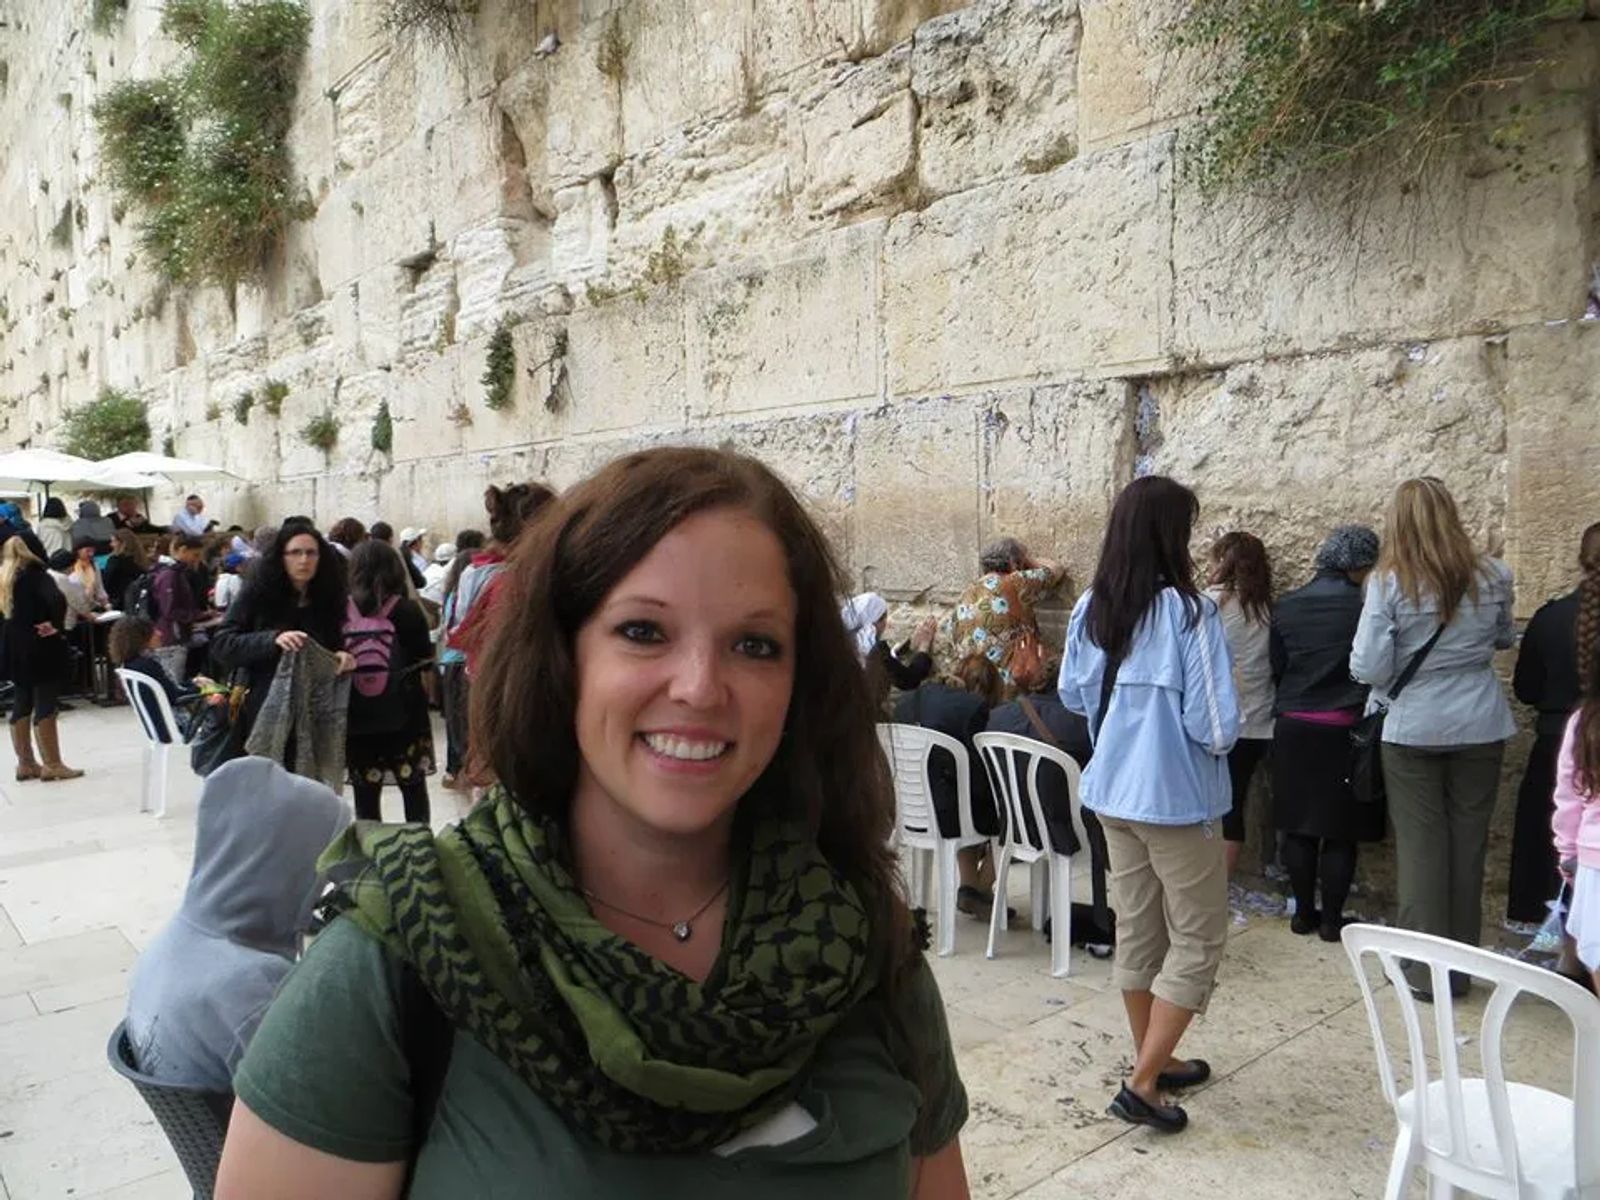 Janiel in front of Western Wall in Jerusalem on Women's Side